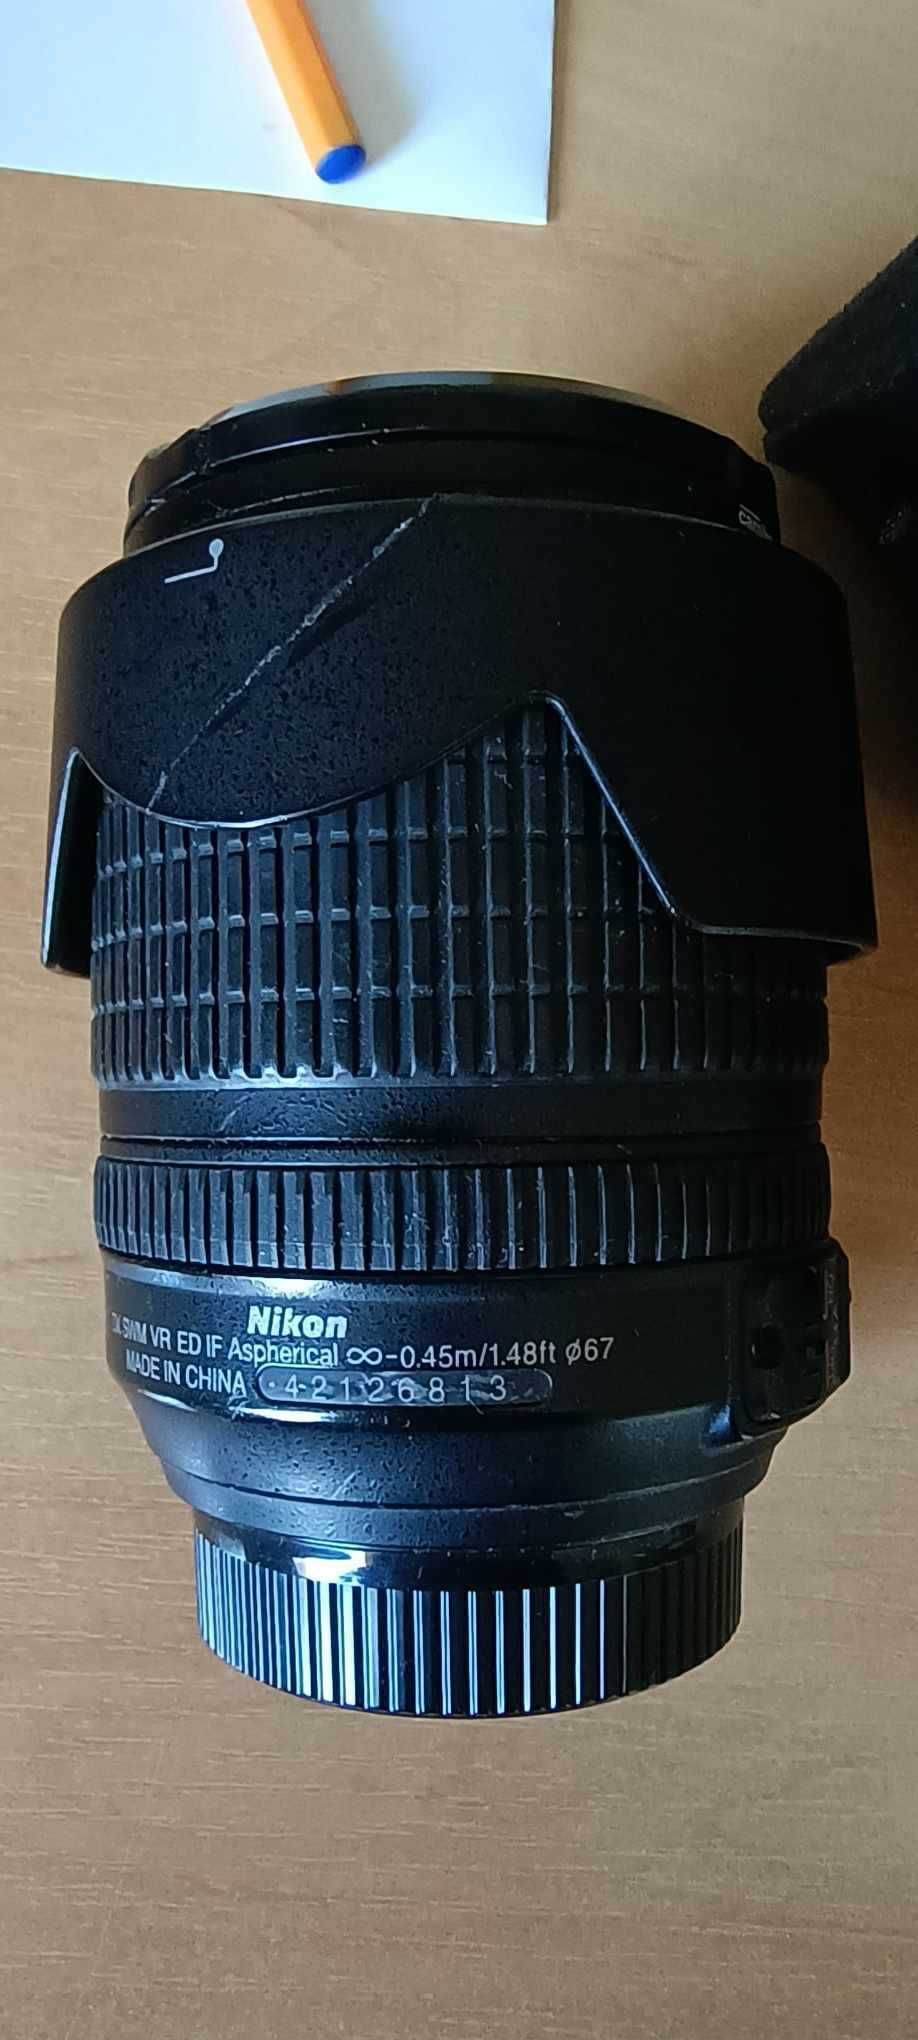 Sprzedam obiektyw Nikkor 18-105 VR ED ze światłem f/3,5-5,6